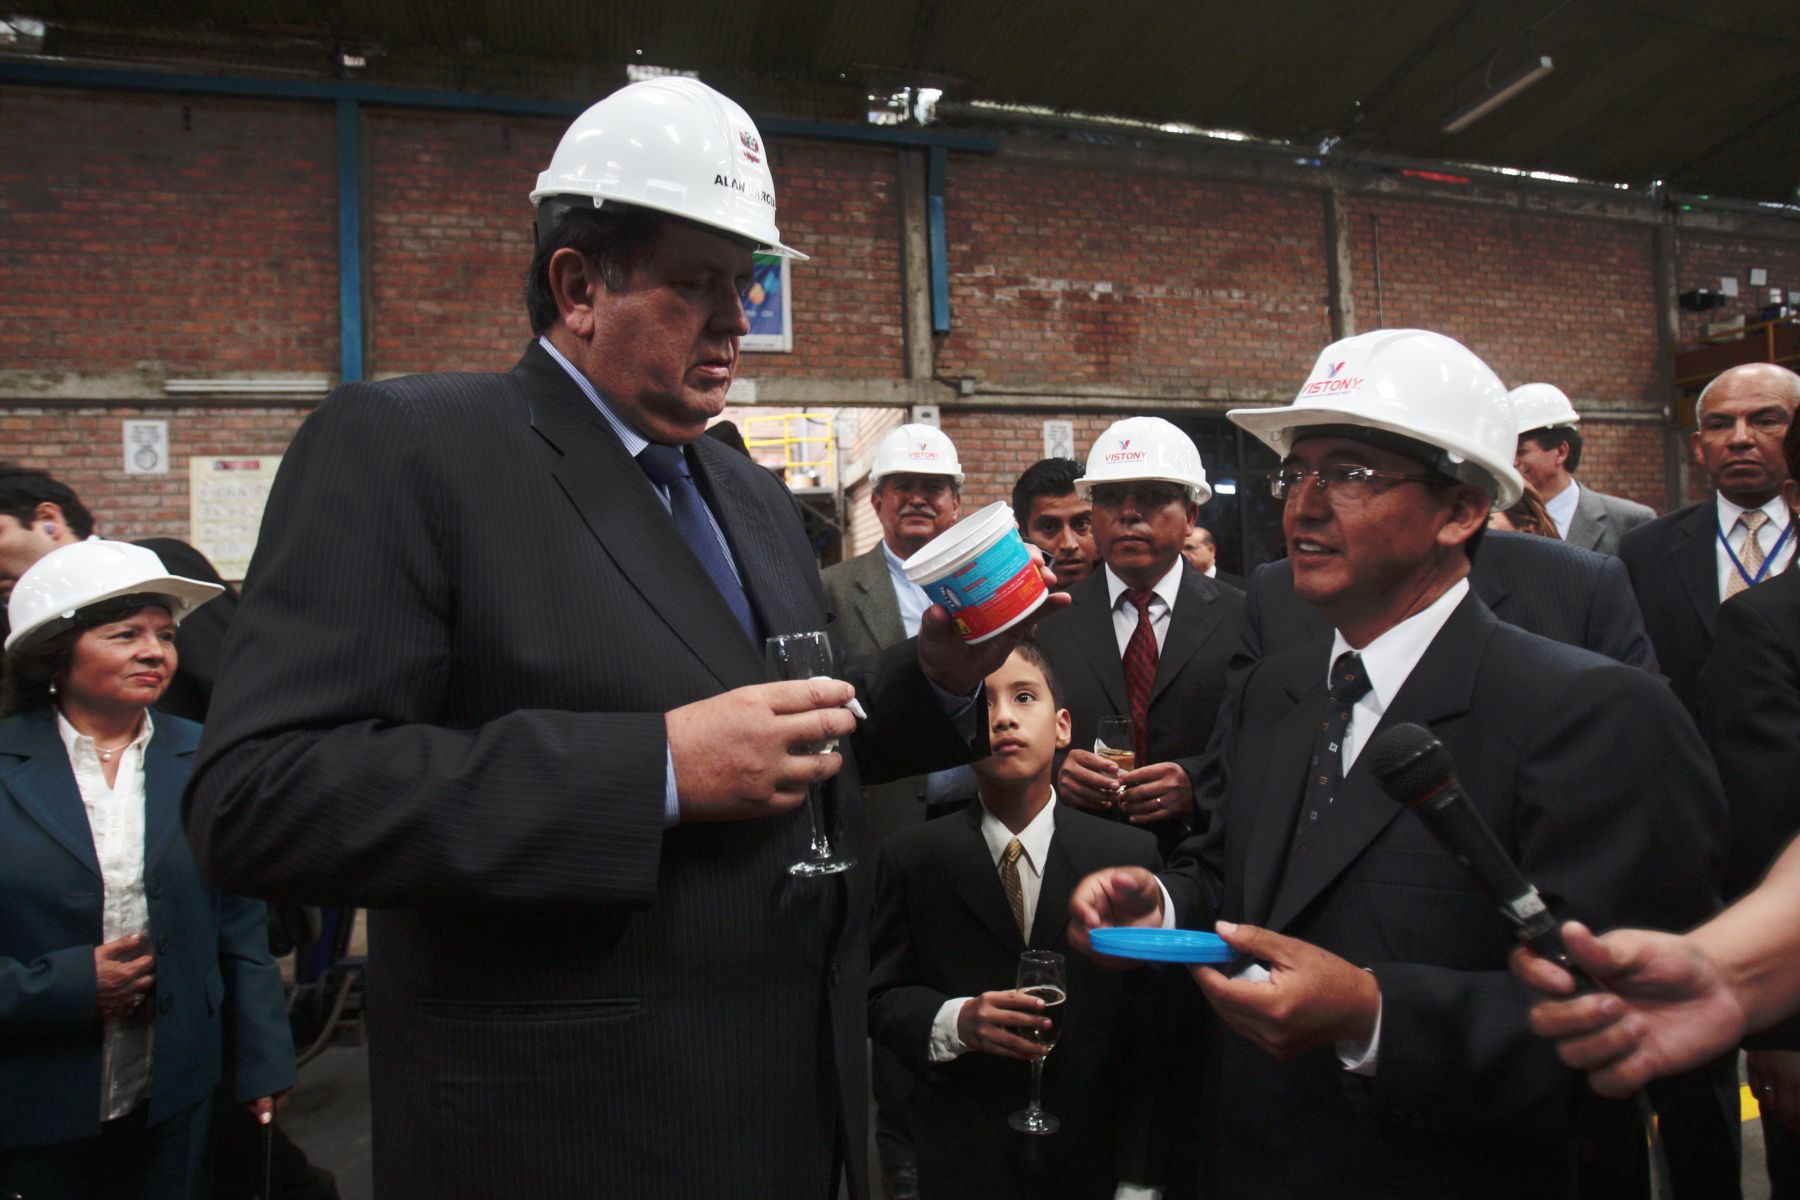 Presidente de la República, Alan García, asiste a ceremonia de inauguración de planta de lubricantes Vistony, en el distrito de Ancón. Foto: ANDINA/Juan Carlos Guzmán Negrini.